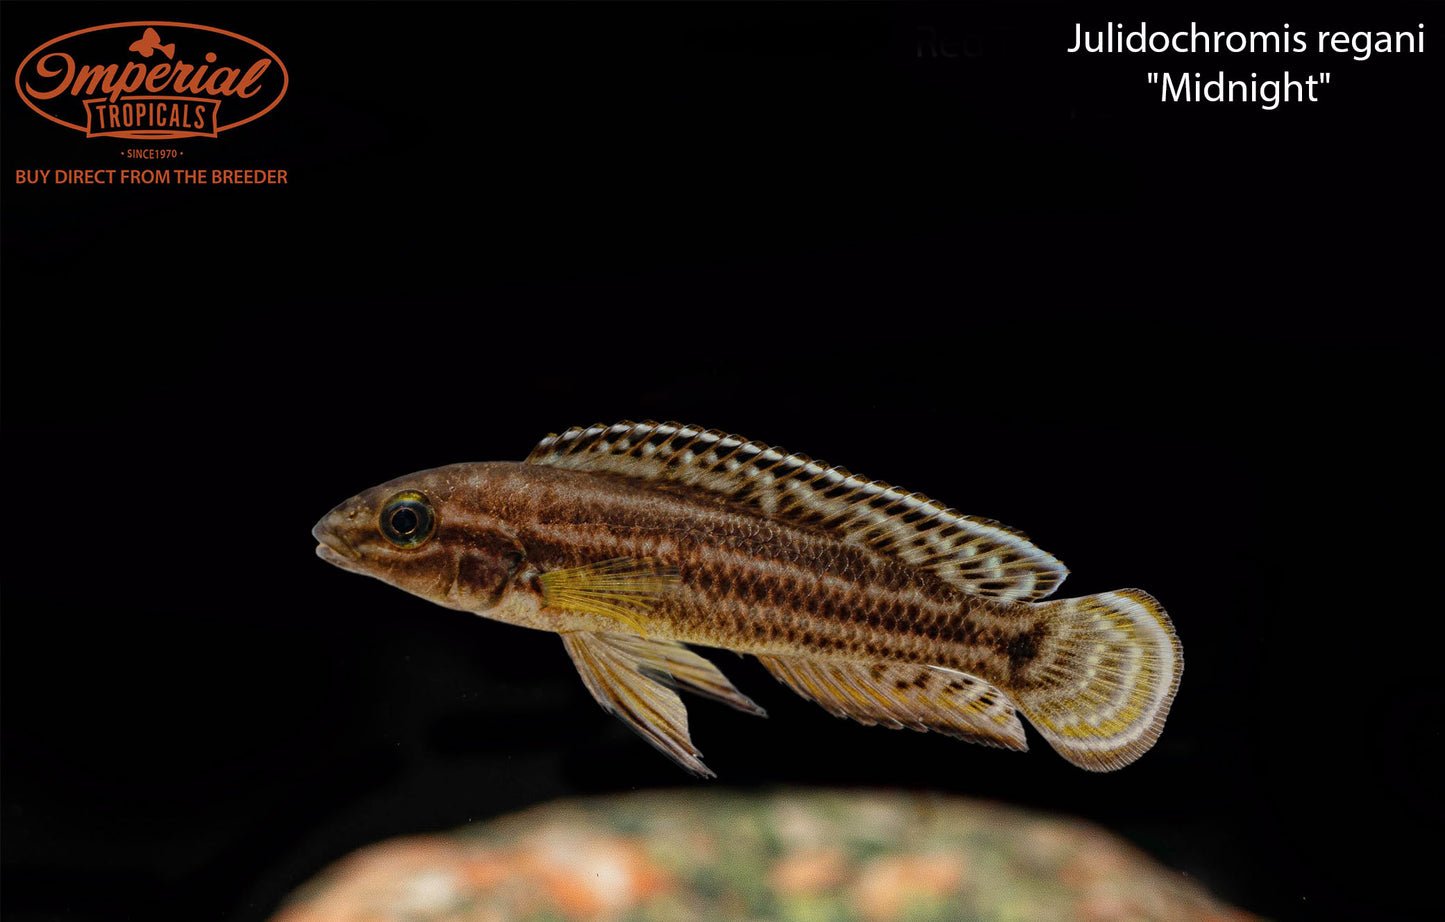 Julidochromis regani "Midnight"